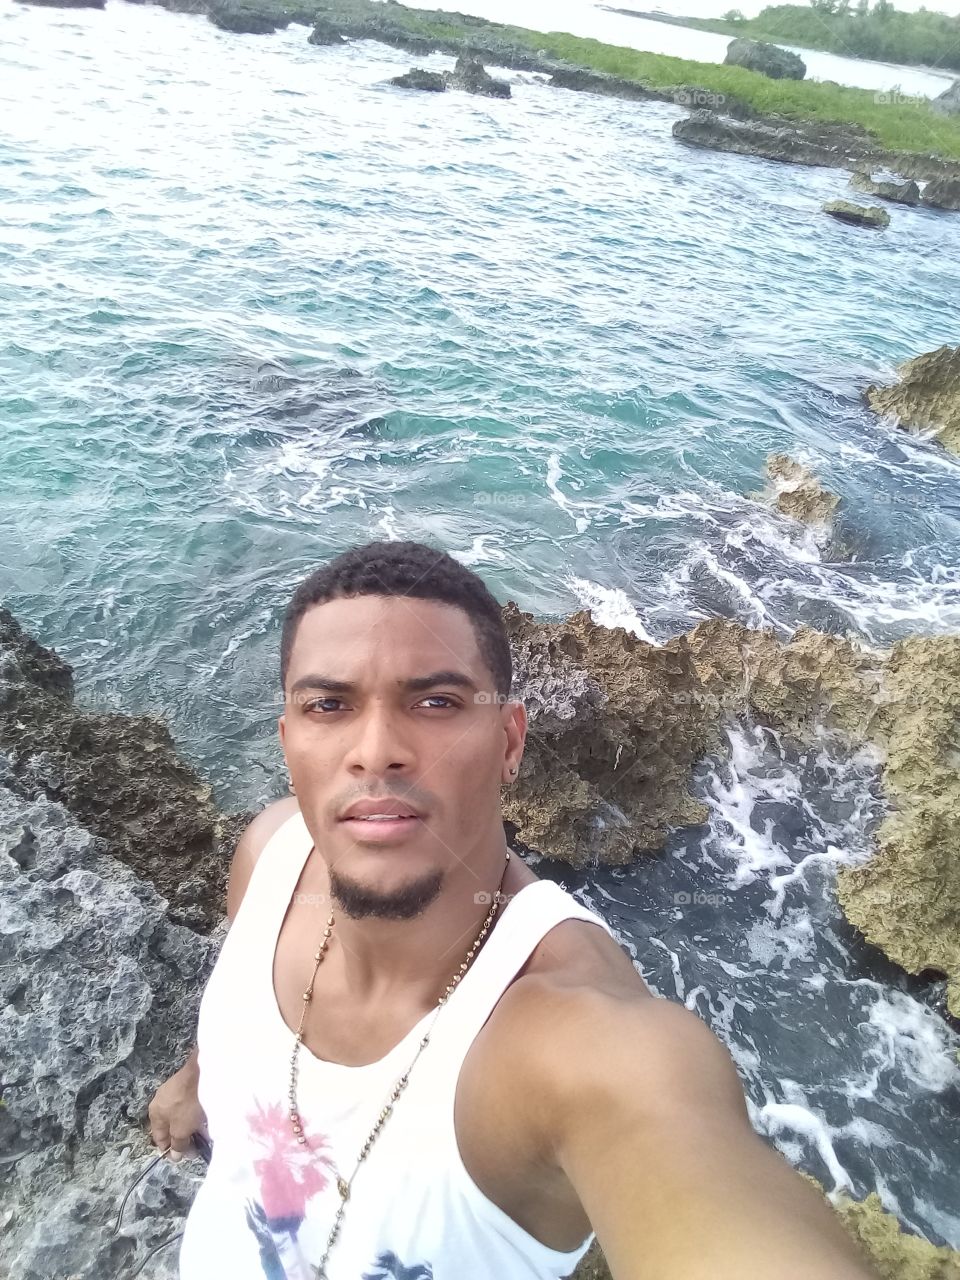 Orgulloso de ser Dominicano y vivir aqui donde estan las mejores playas y el clima mas tropical del mundo.